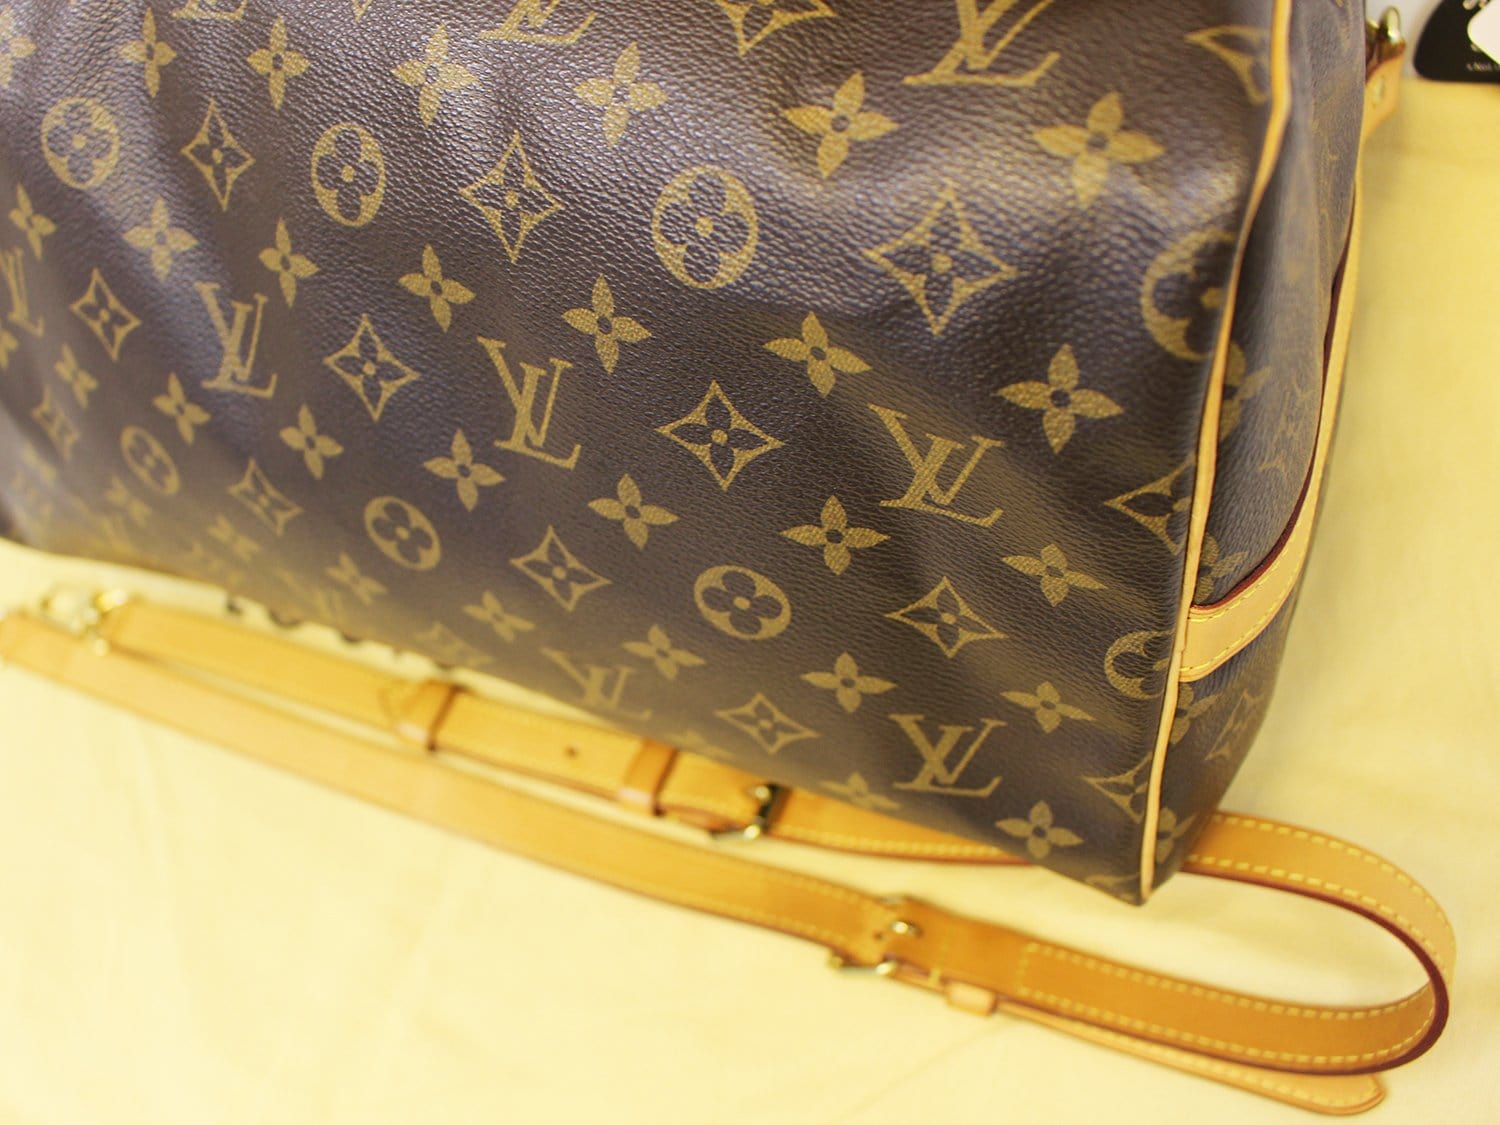 Louis Vuitton Monogram Speedy 30 Boston Bag (Pre-Owned)